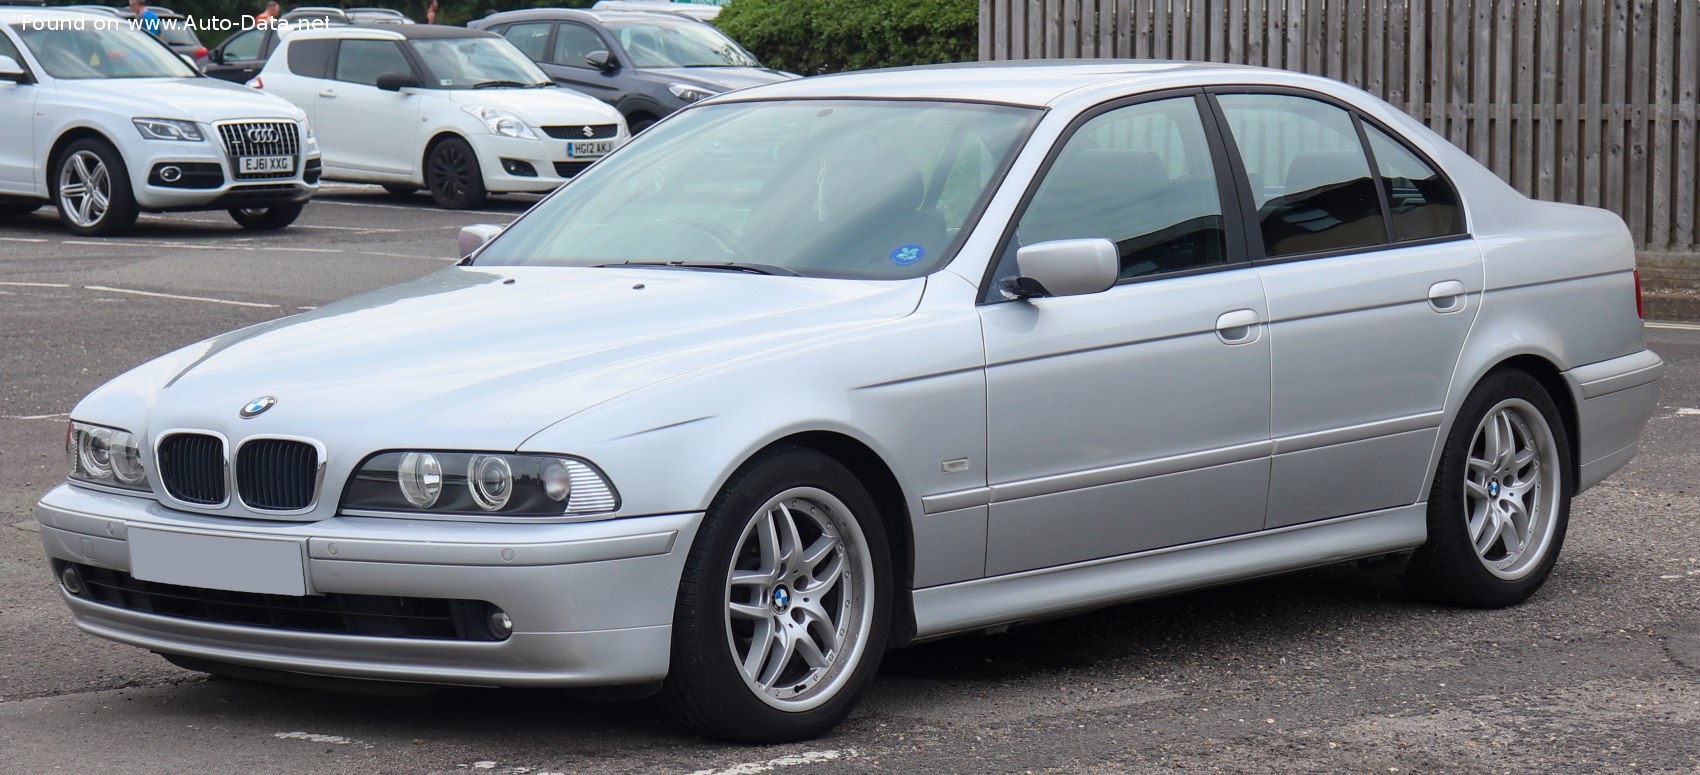 2000 BMW Série 5 (E39, Facelift 2000) 525i 24V (192 CH)  Fiche technique,  consommation de carburant , Dimensions